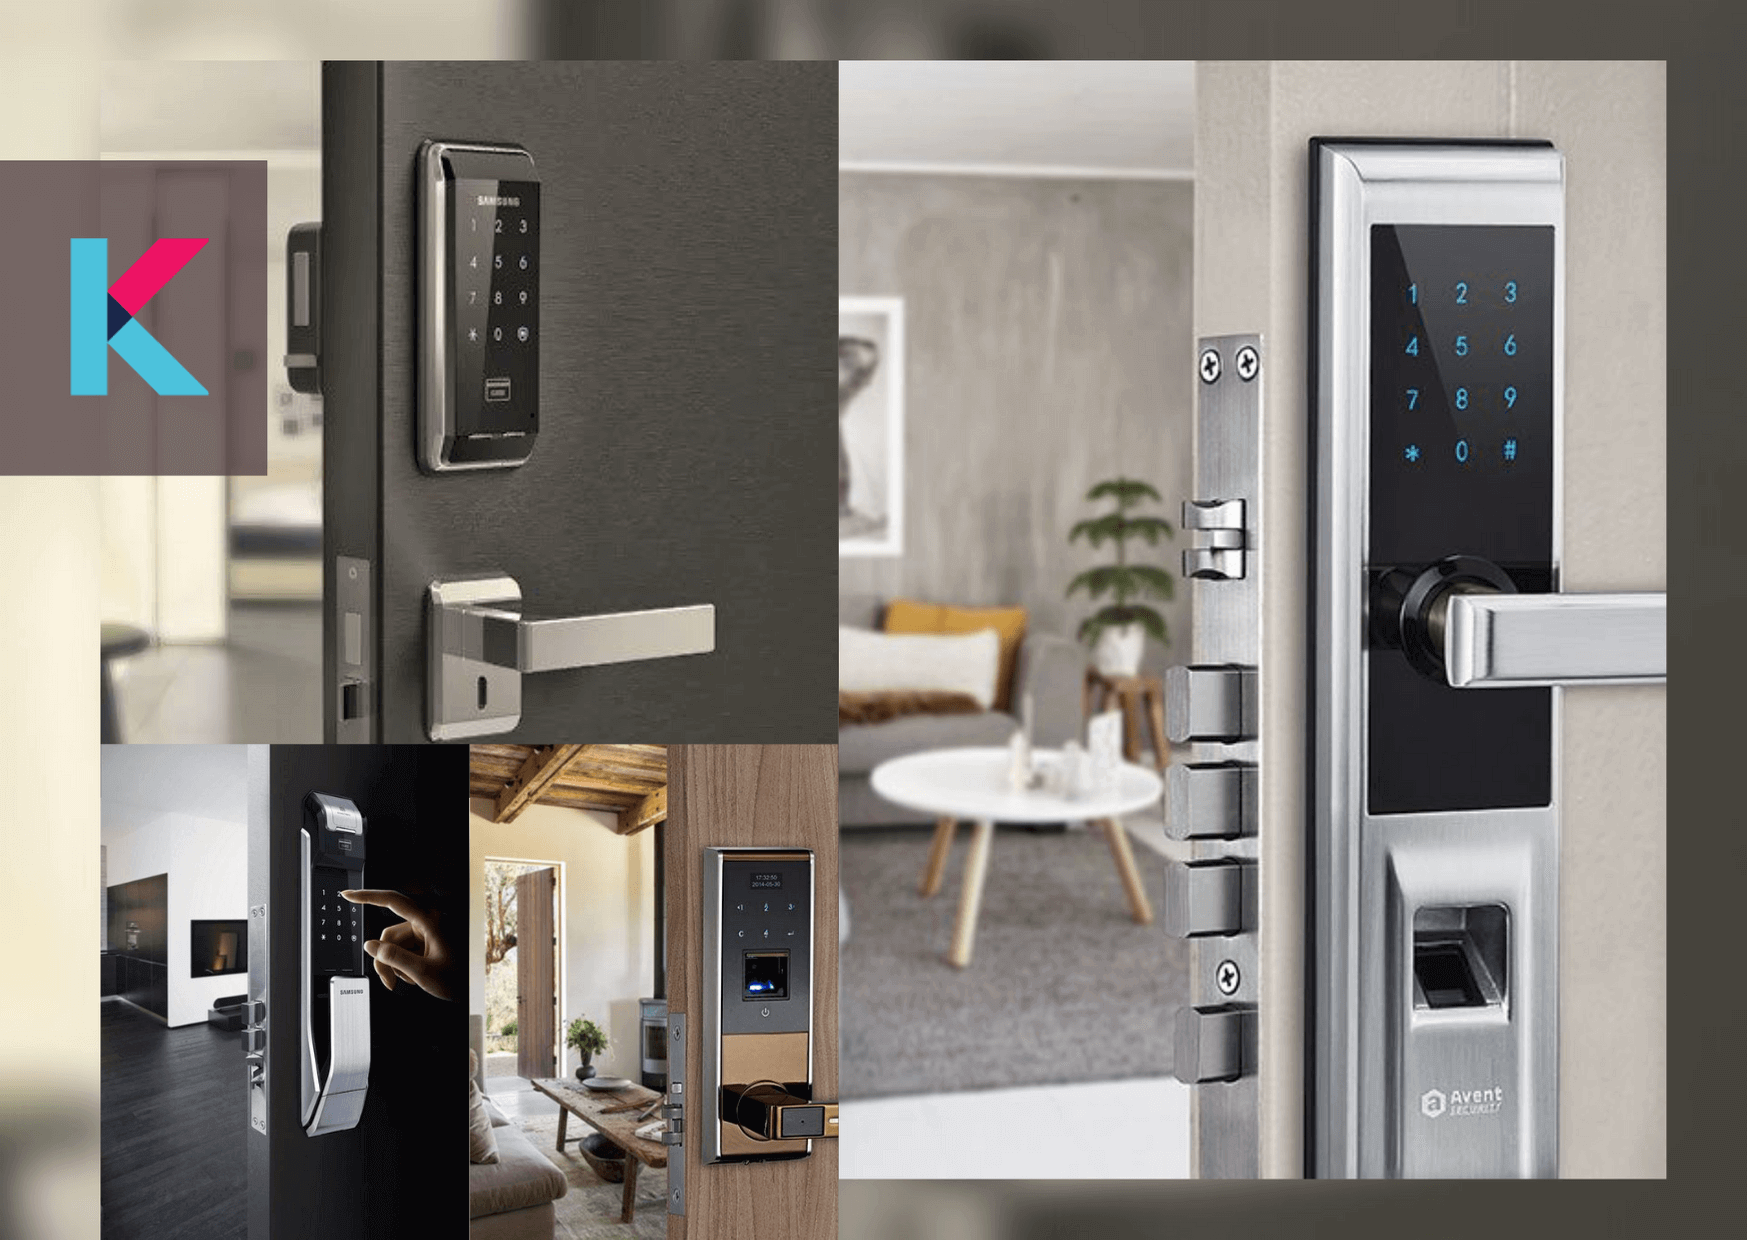 一番の贈り物 Yale Assure Lock SL Key-Free Touchscreen Door in Bronze August  Connect Wi-Fi Bridge, Remote Access, Alexa Integration for Your Smart 